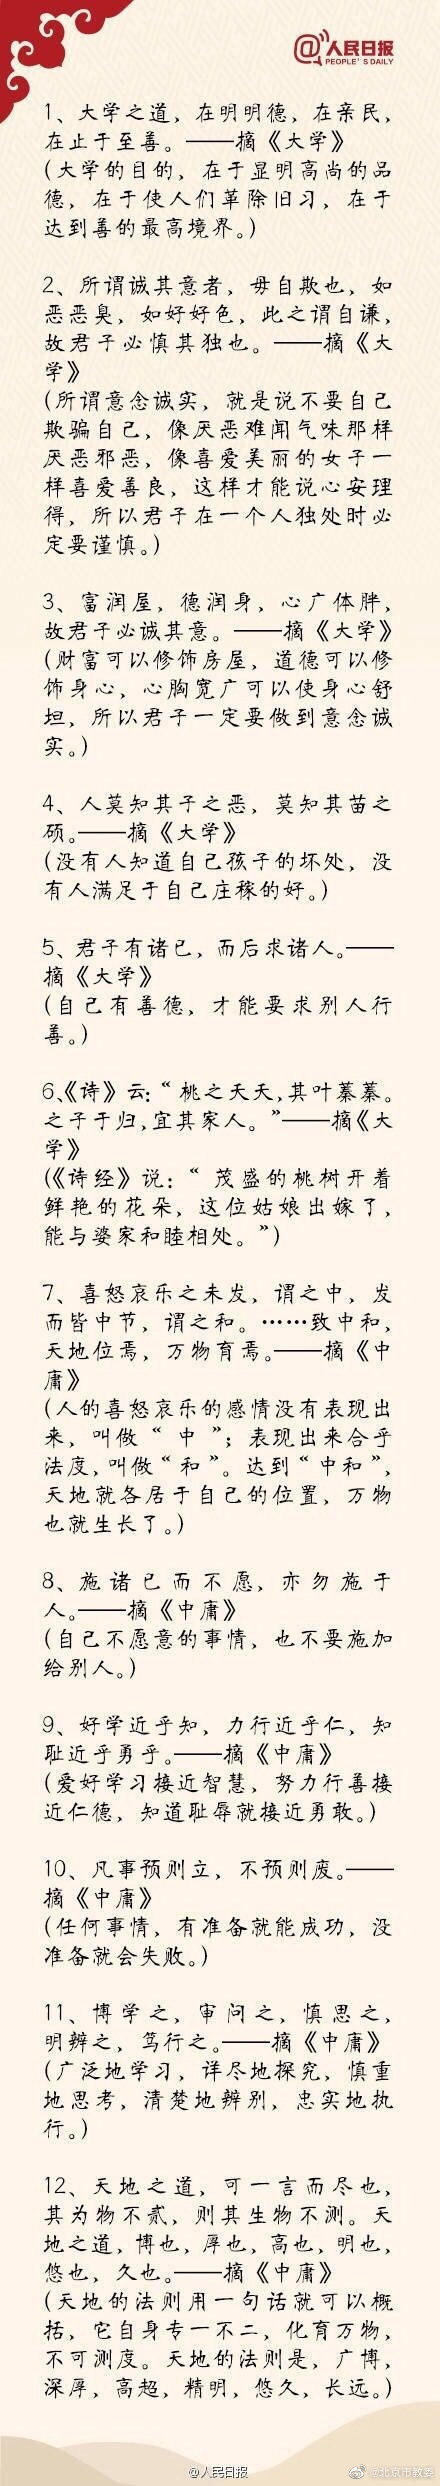 中国古籍中100句经典语录